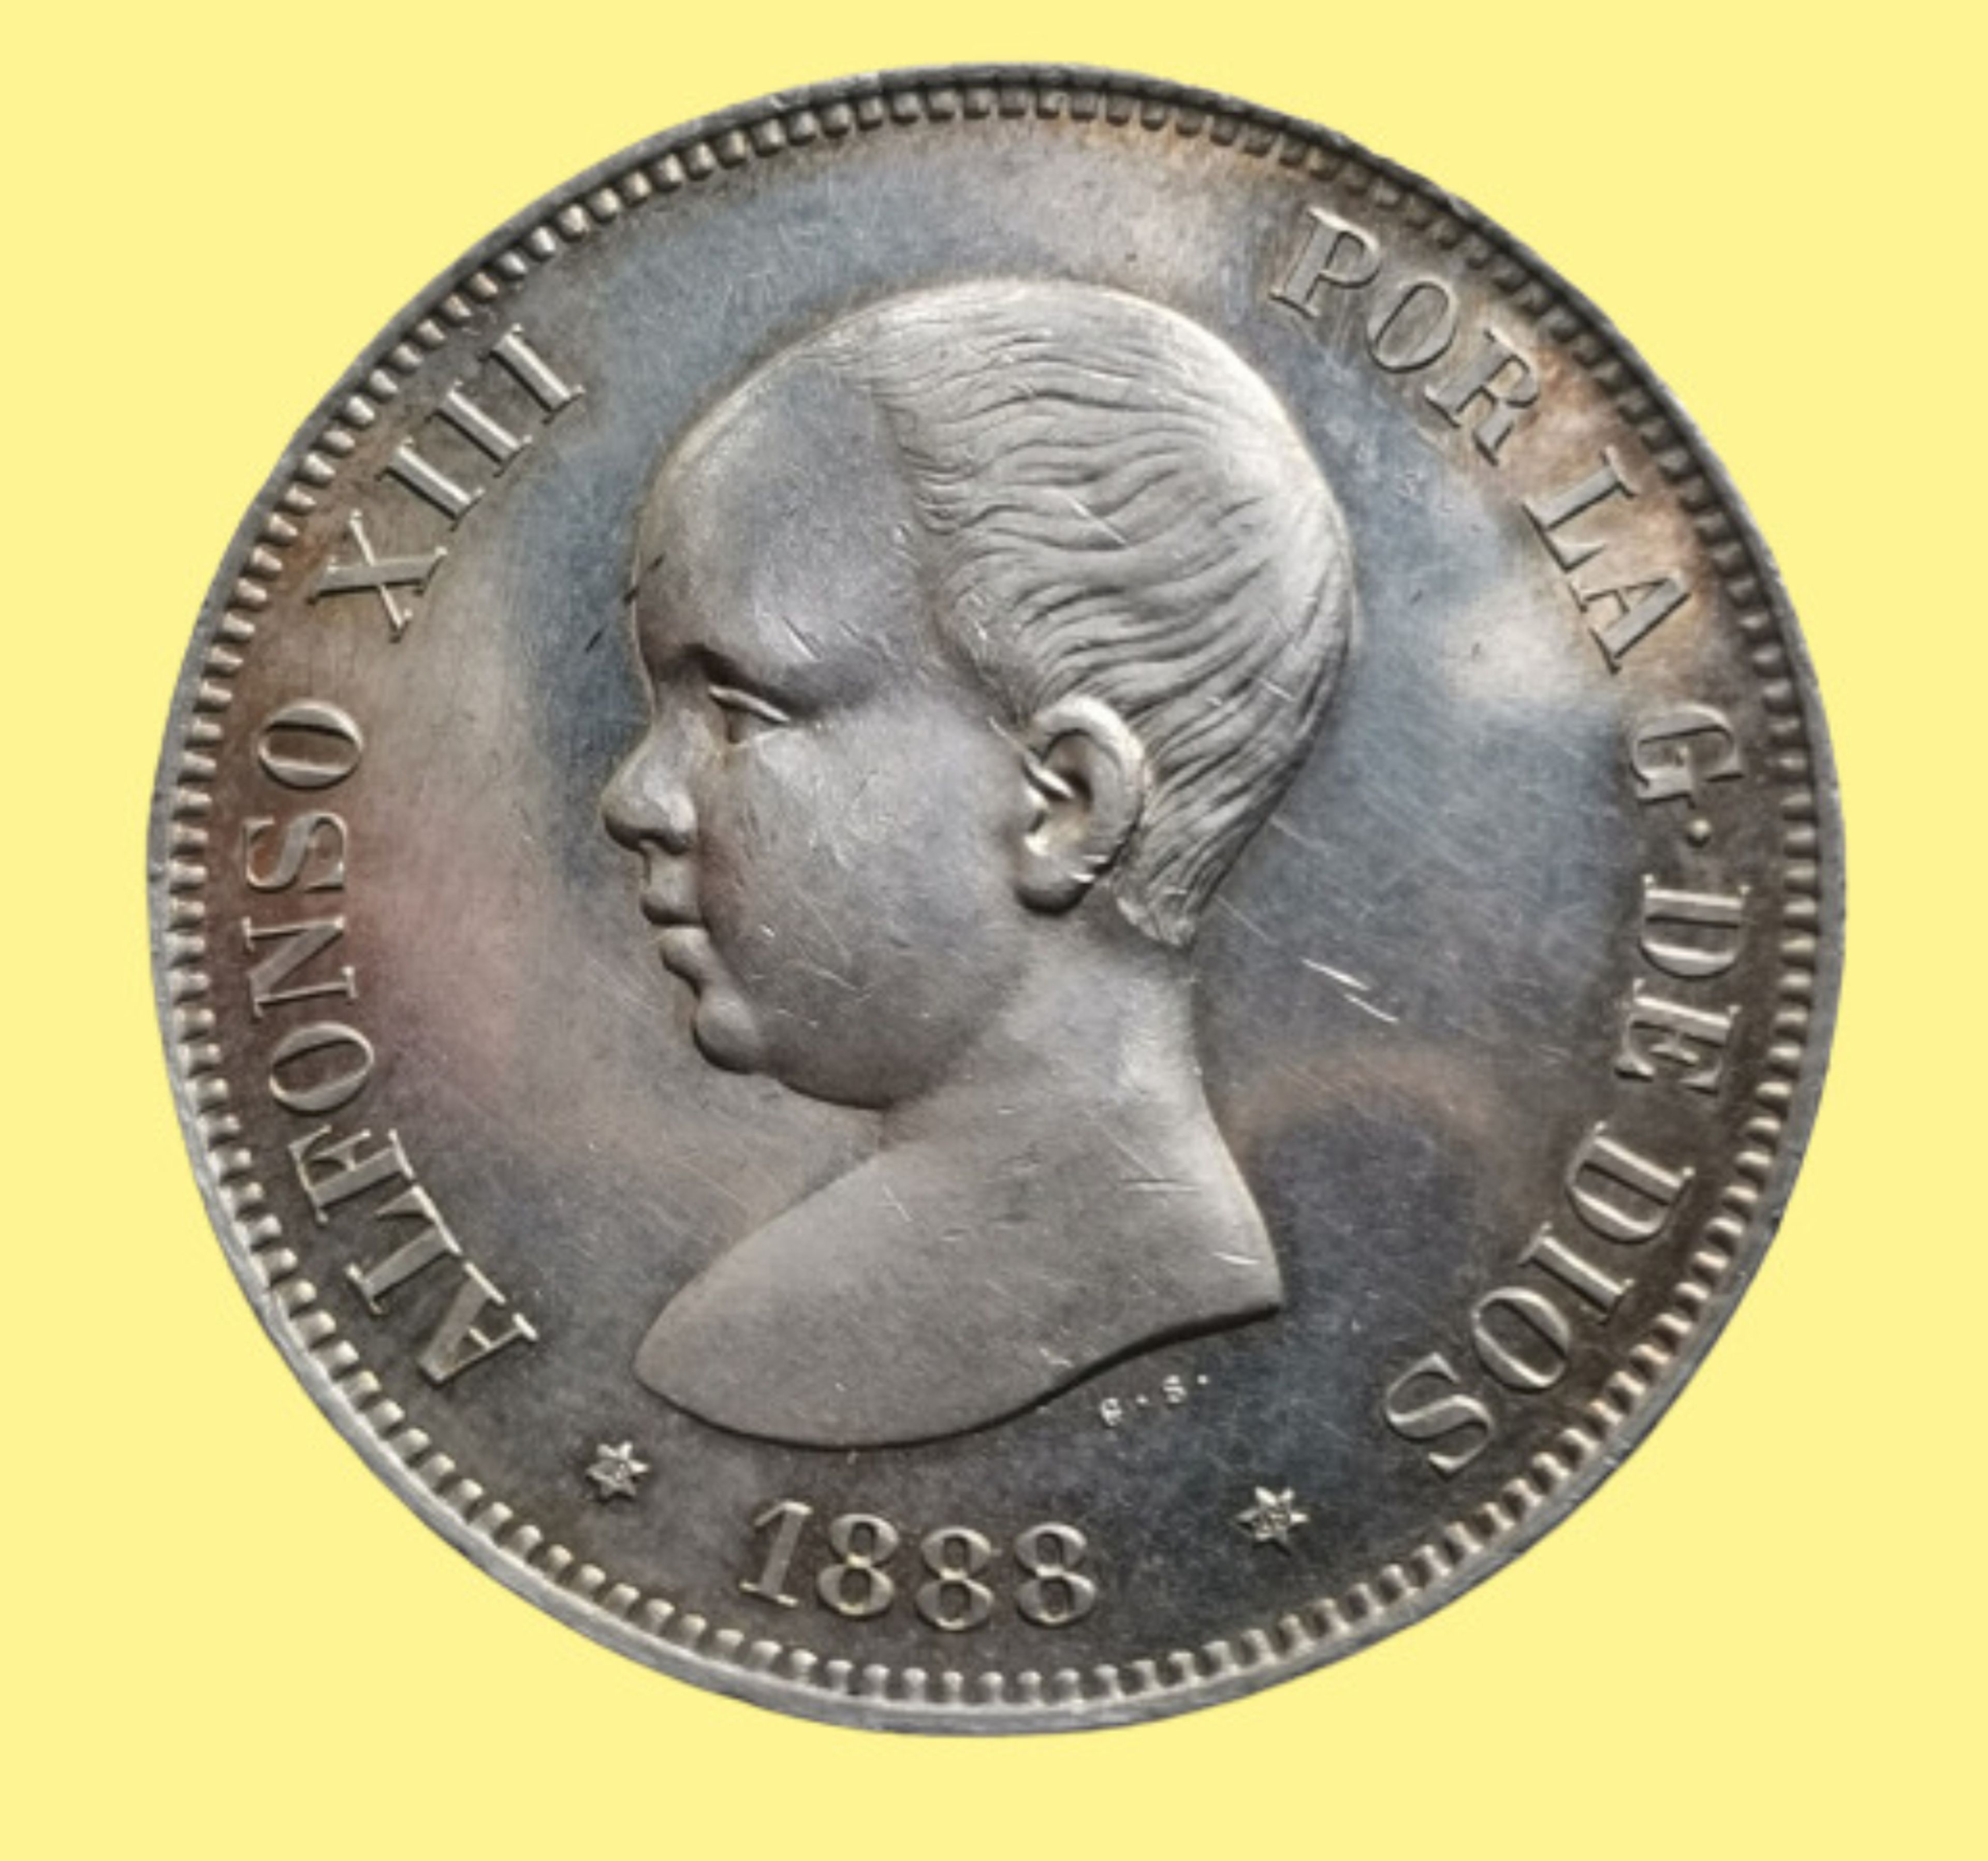 Moneda de 2 pesetas de 1888